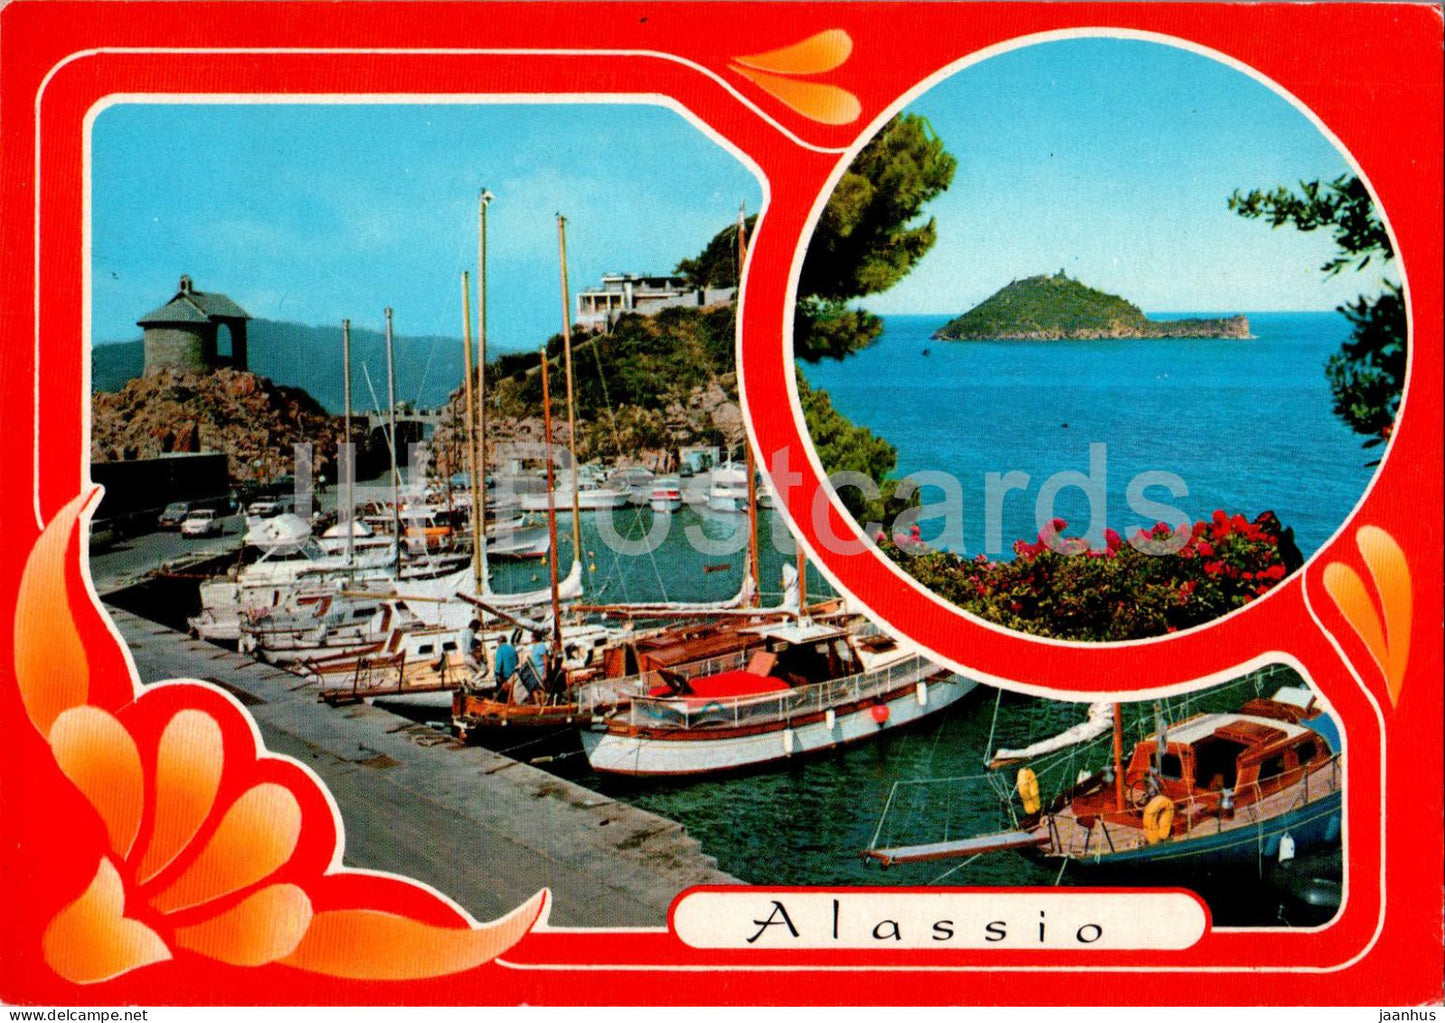 Alassio - Riviera dei Fiori - Il Porto - port - sailing boat - 9405 - 1992 - Italy - used - JH Postcards